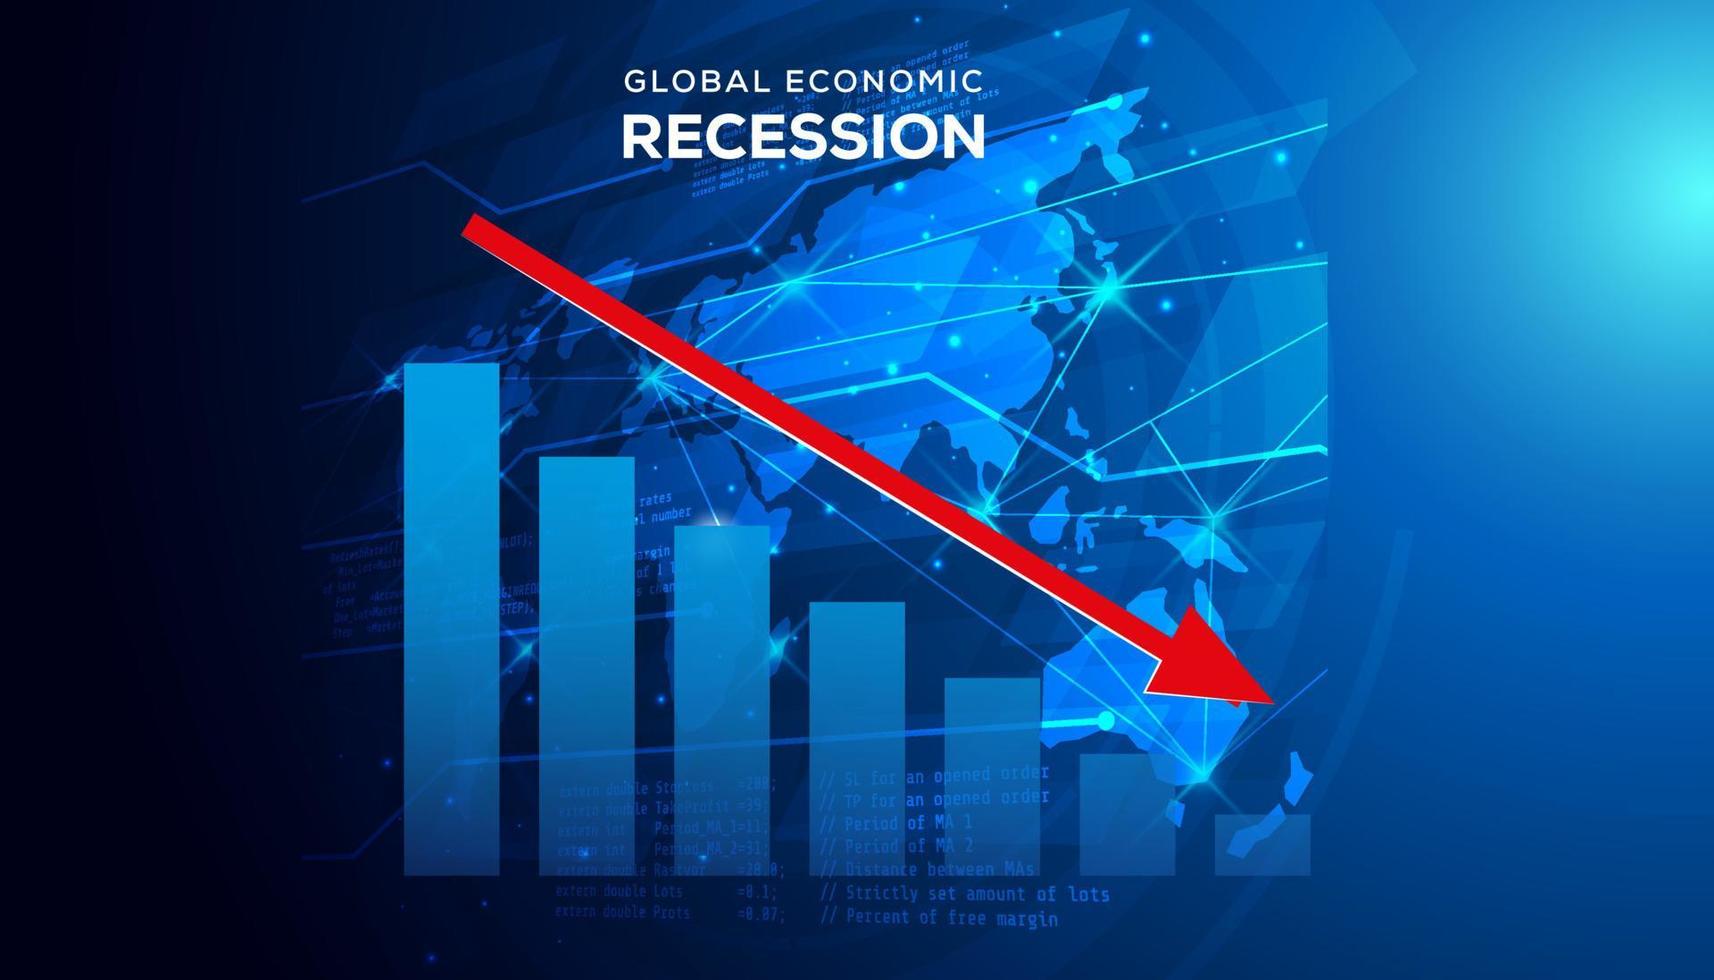 globaal recessie achtergrond. illustratie van economisch recessie met rood pijl symbool vallend naar beneden vector